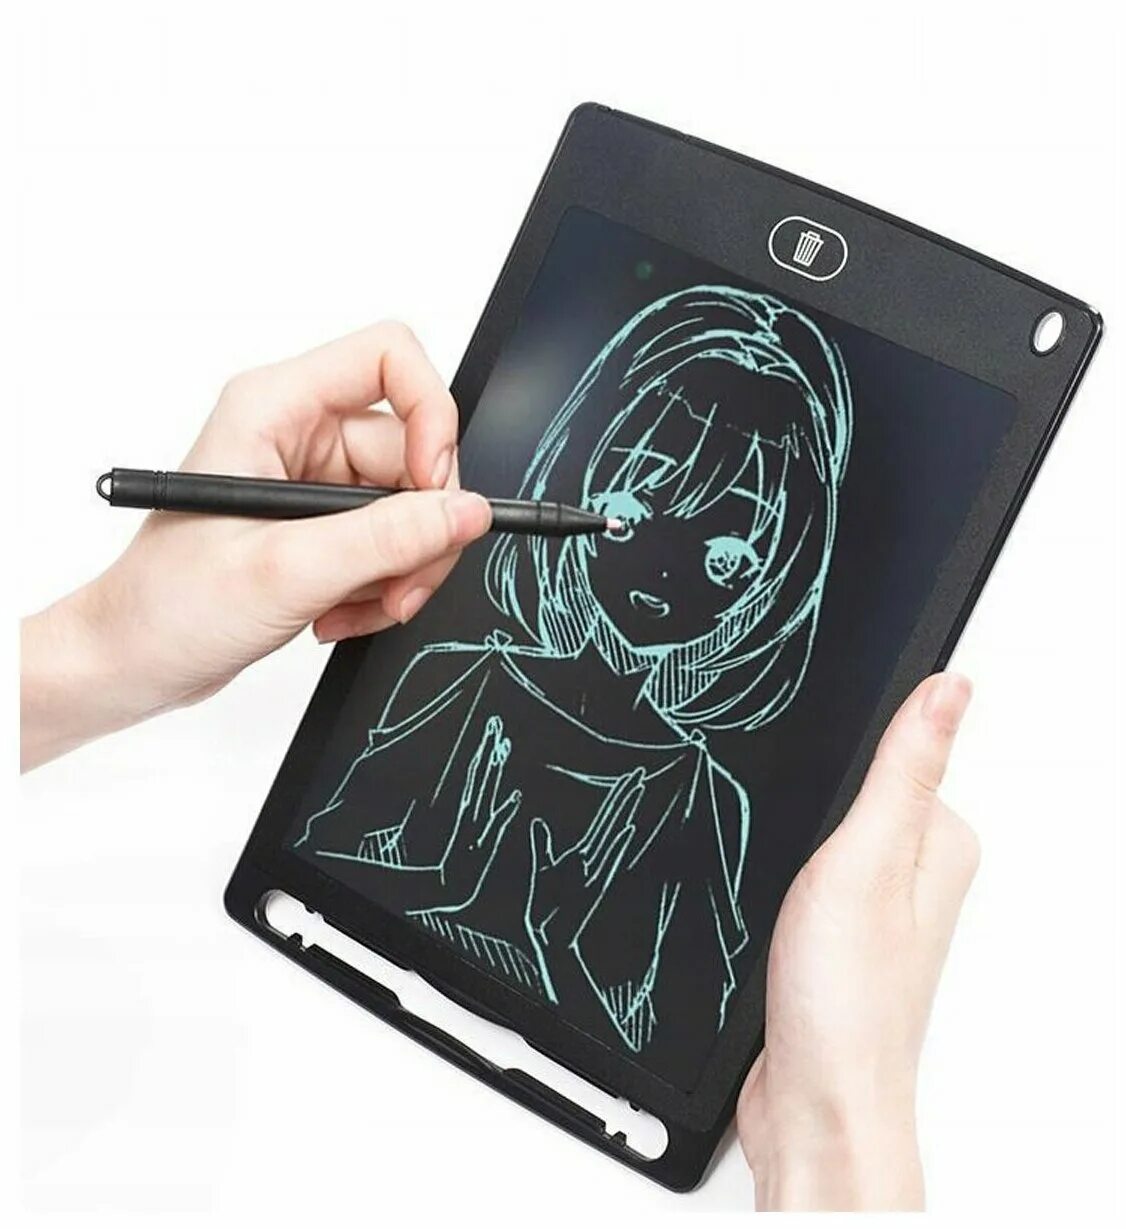 Планшет для рисования с экраном купить. LCD планшет для рисования 8.5 дюймов. Планшет для рисования LCD writing Tablet 8.5. Планшет д/заметок LCD writing Tablet 8,5 дюймов hsp85. Графический планшет 8.5 дюймов вв8501.